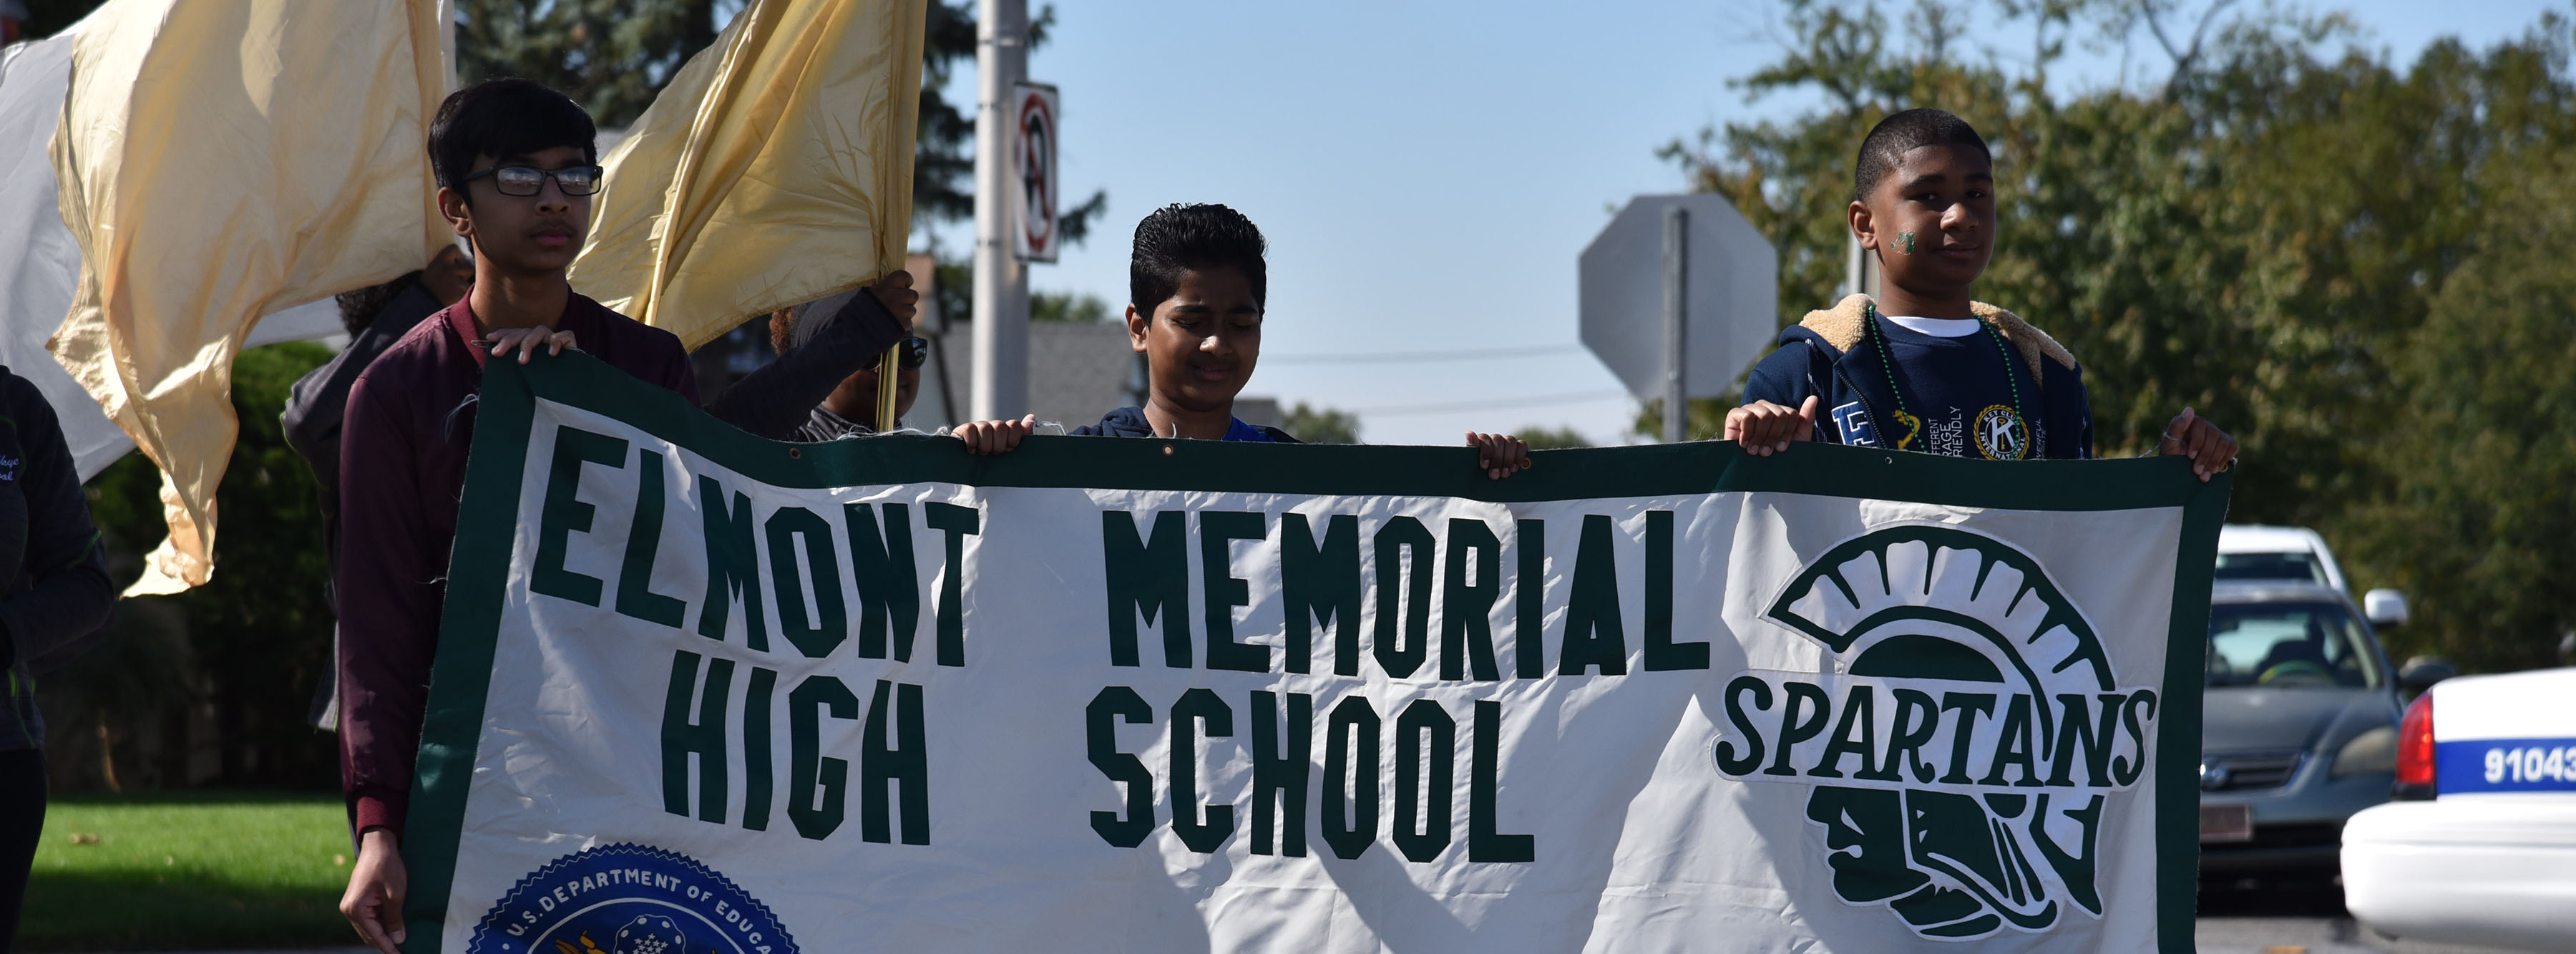 School banner